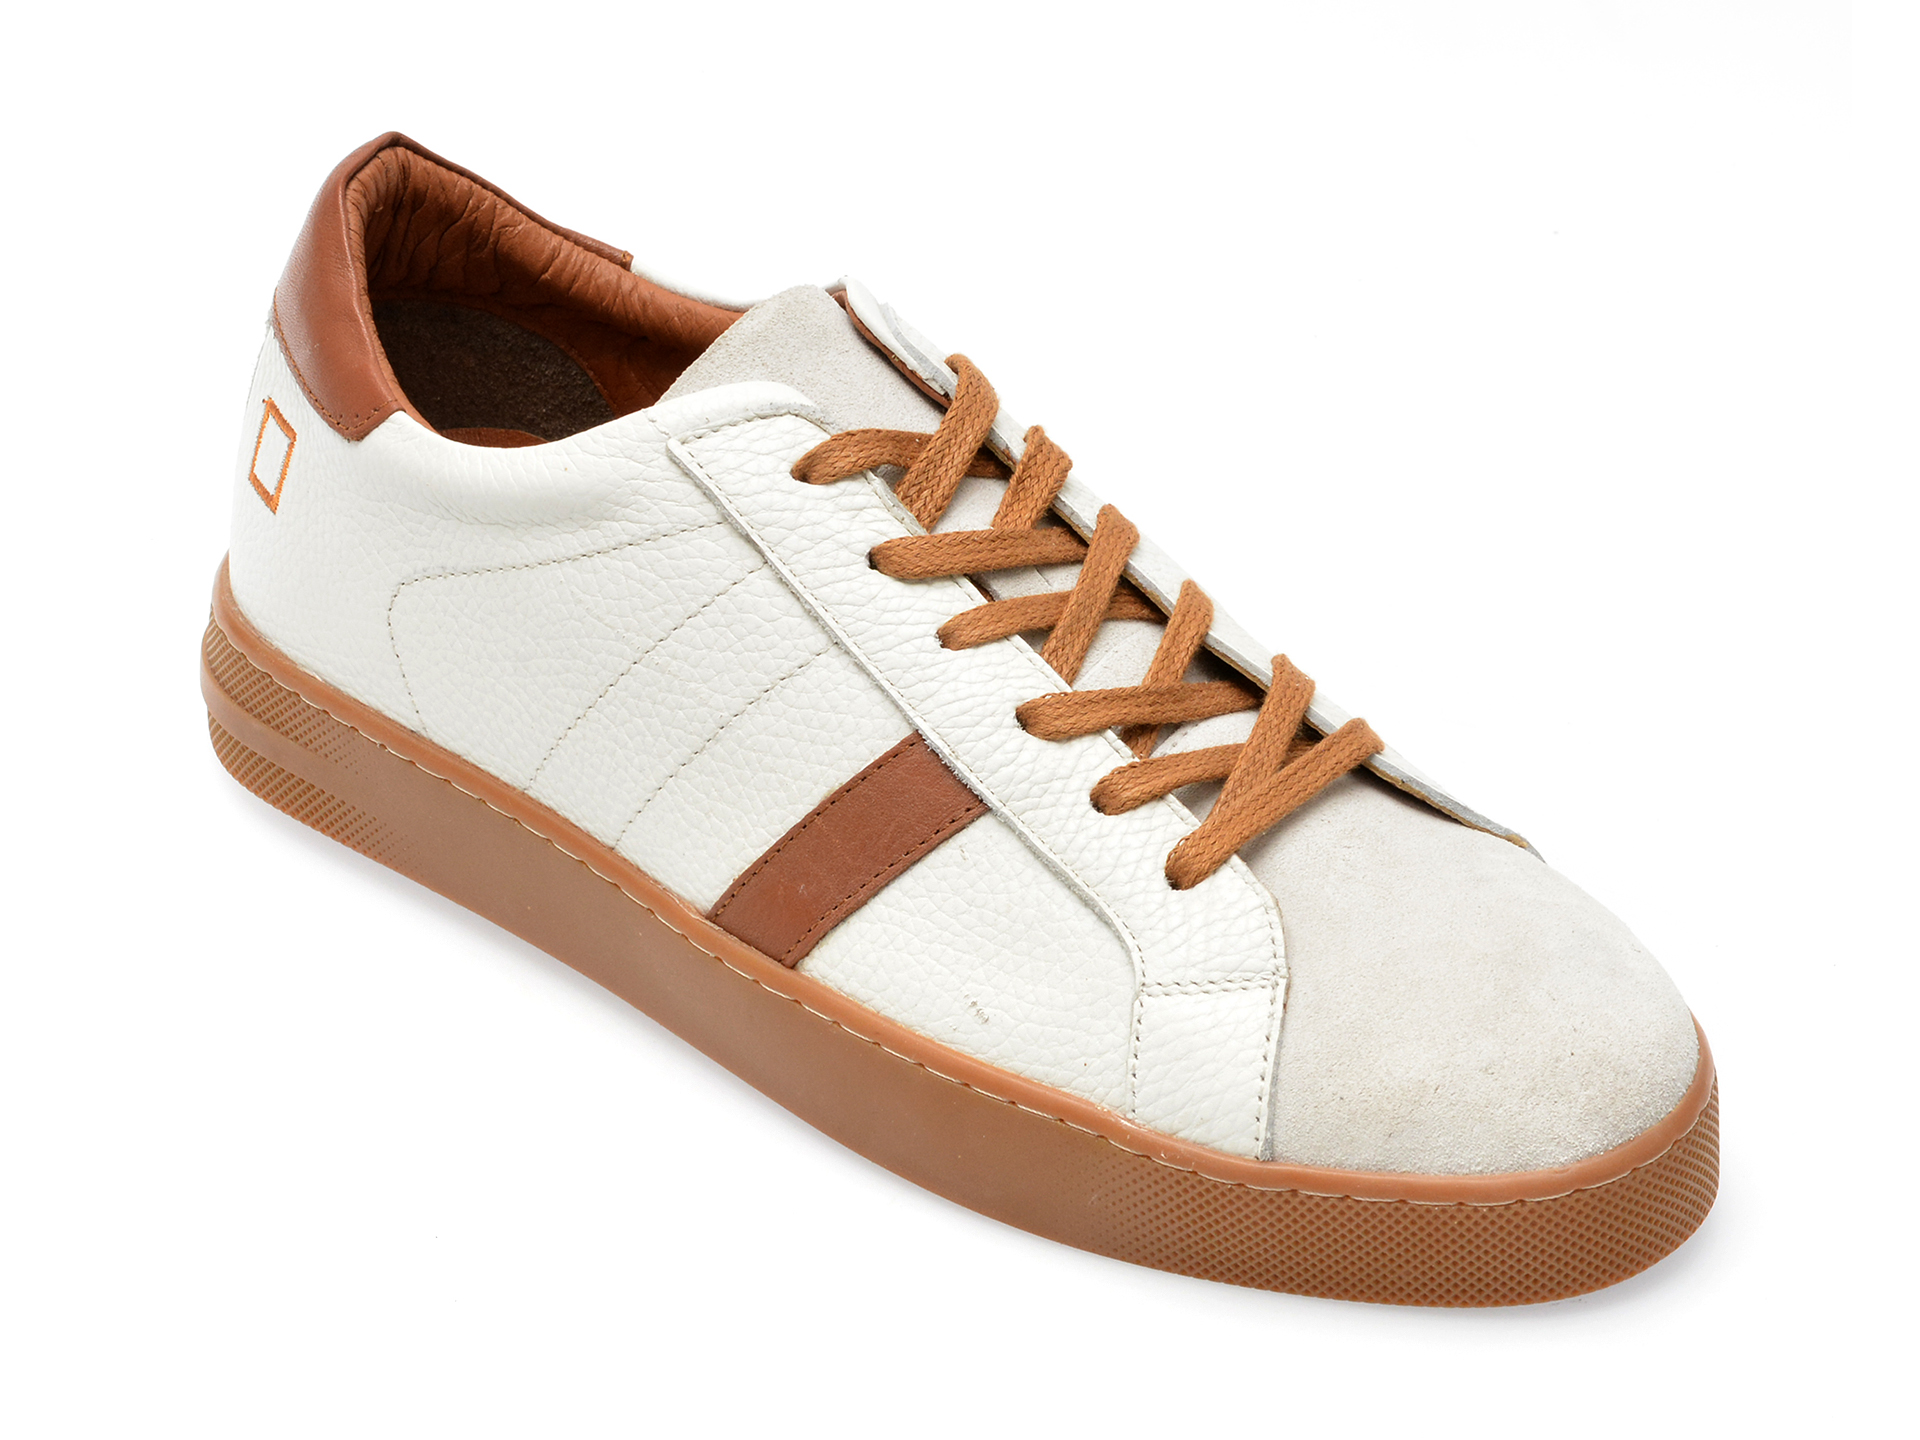 Pantofi AXXELLL albi, MS1005, din piele naturala /barbati/pantofi